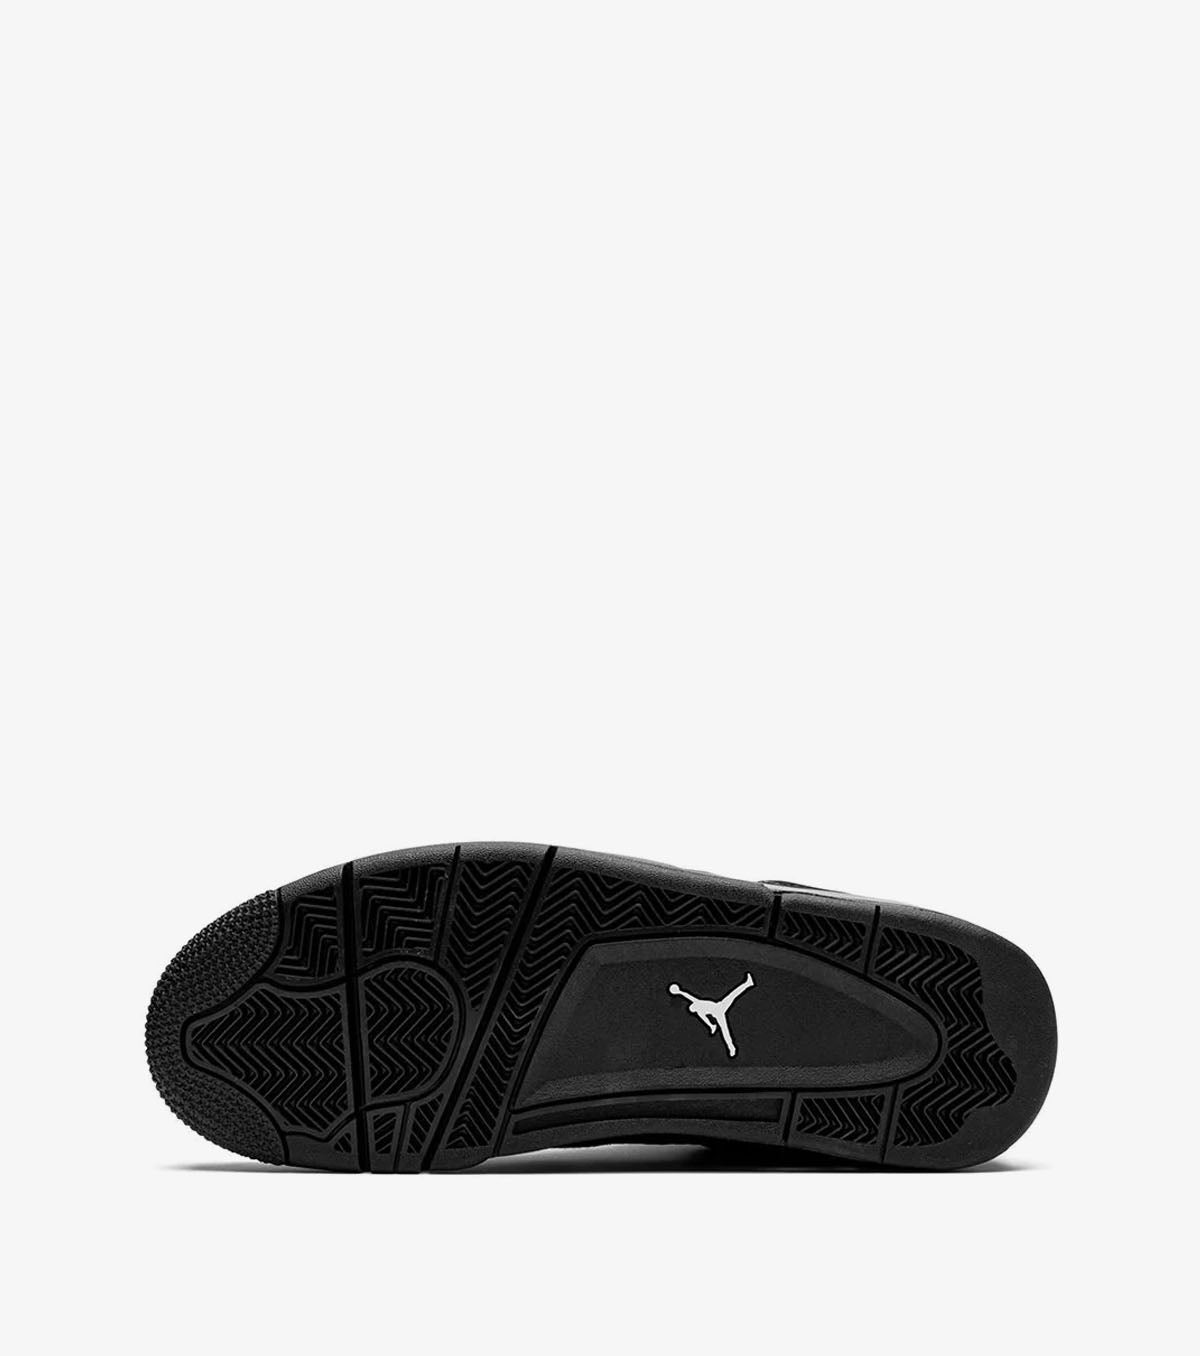 Air Jordan 4 Retro Black Cat 2020